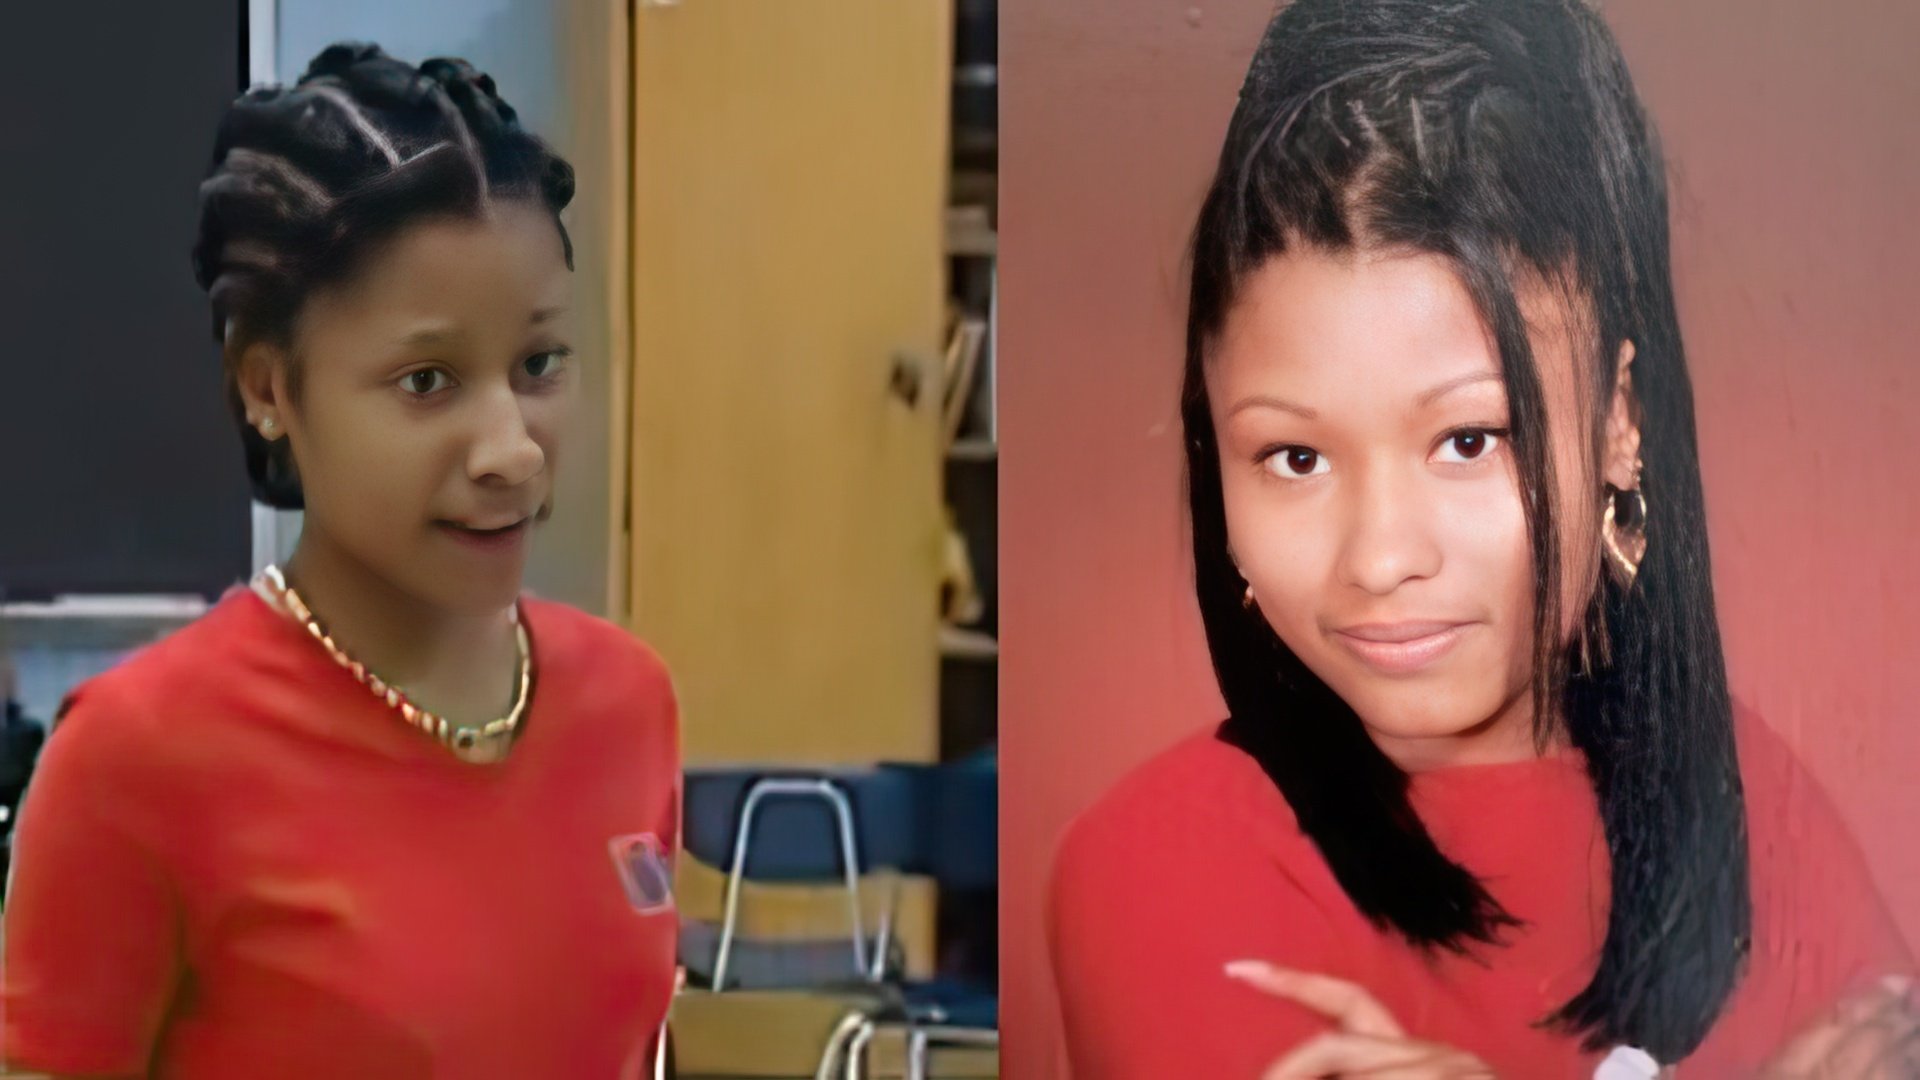  Nicki Minaj in her youth